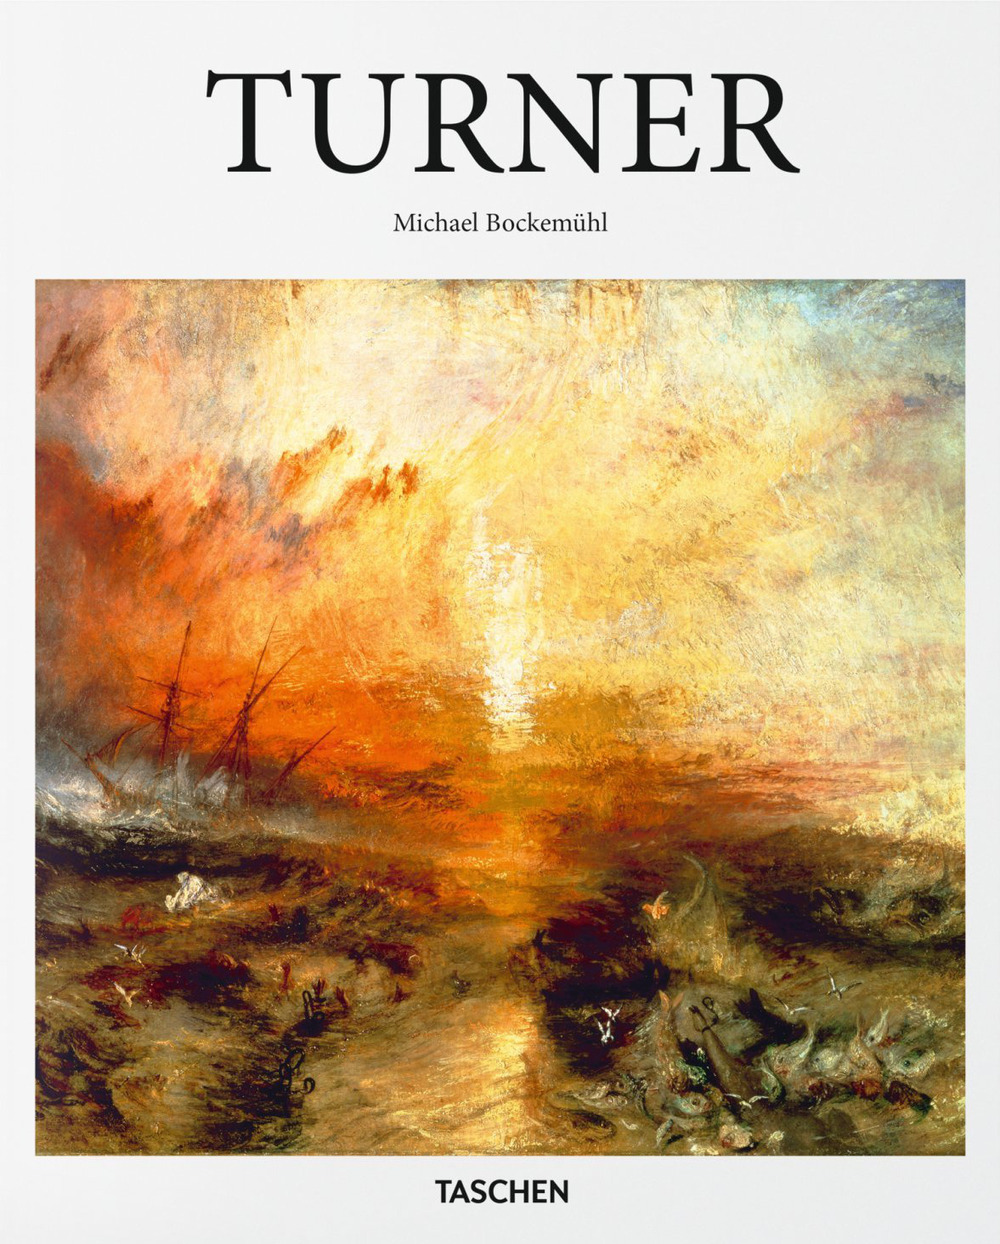 Turner. Ediz. inglese